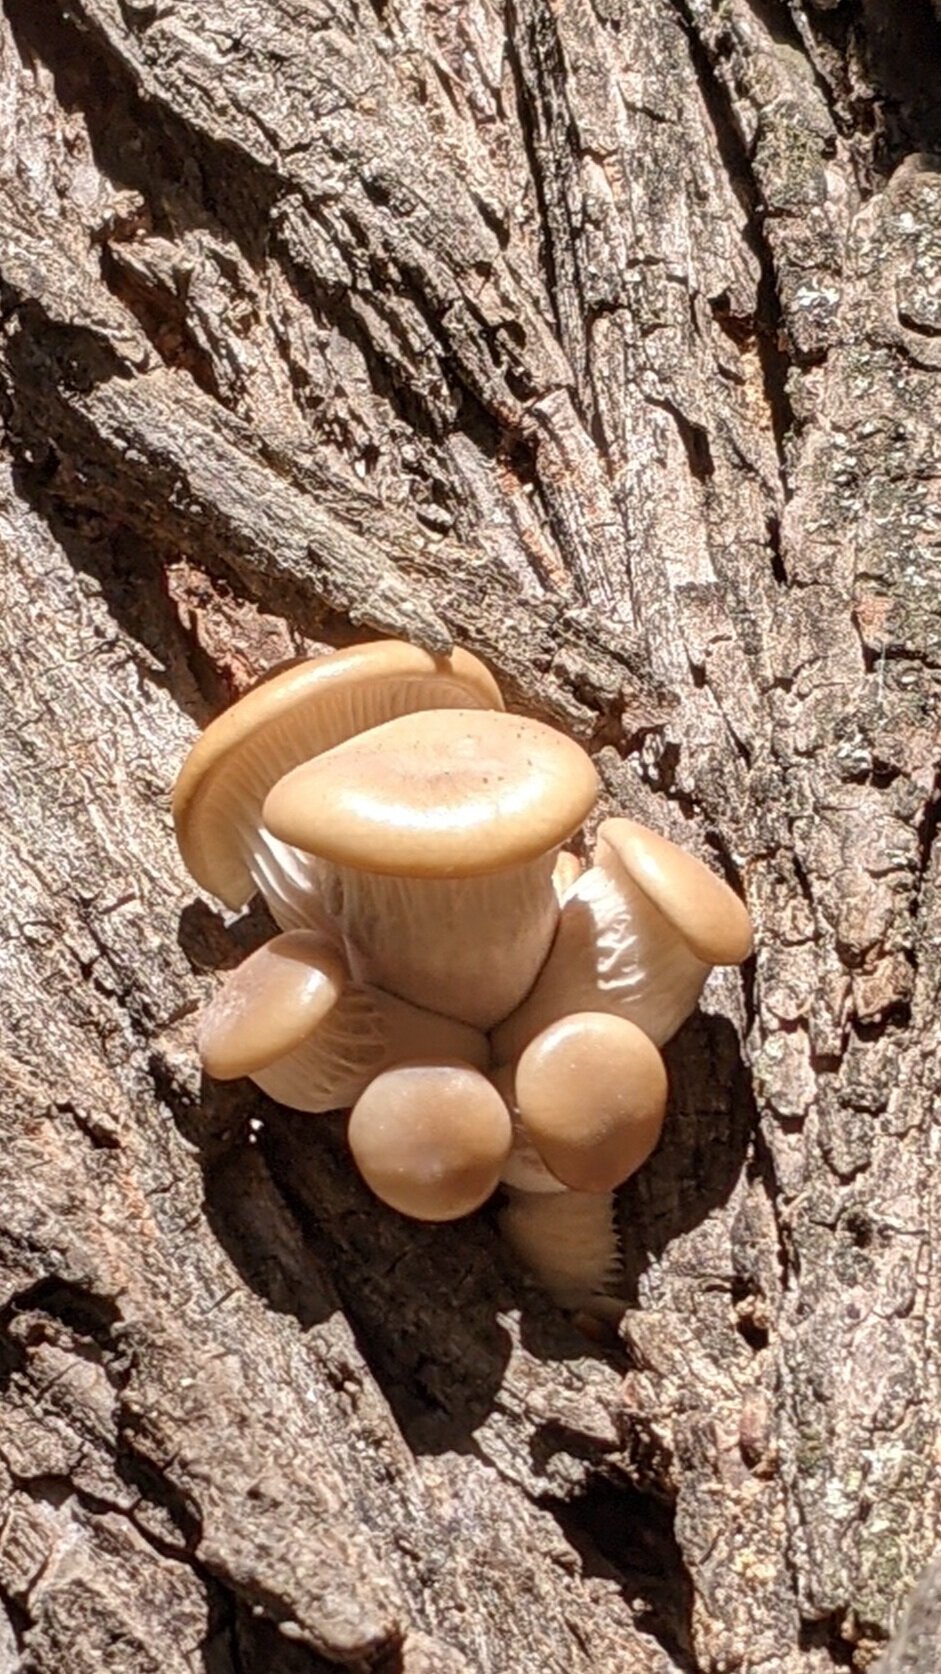 Oyster Mushroom, Pleurotus ostreatus